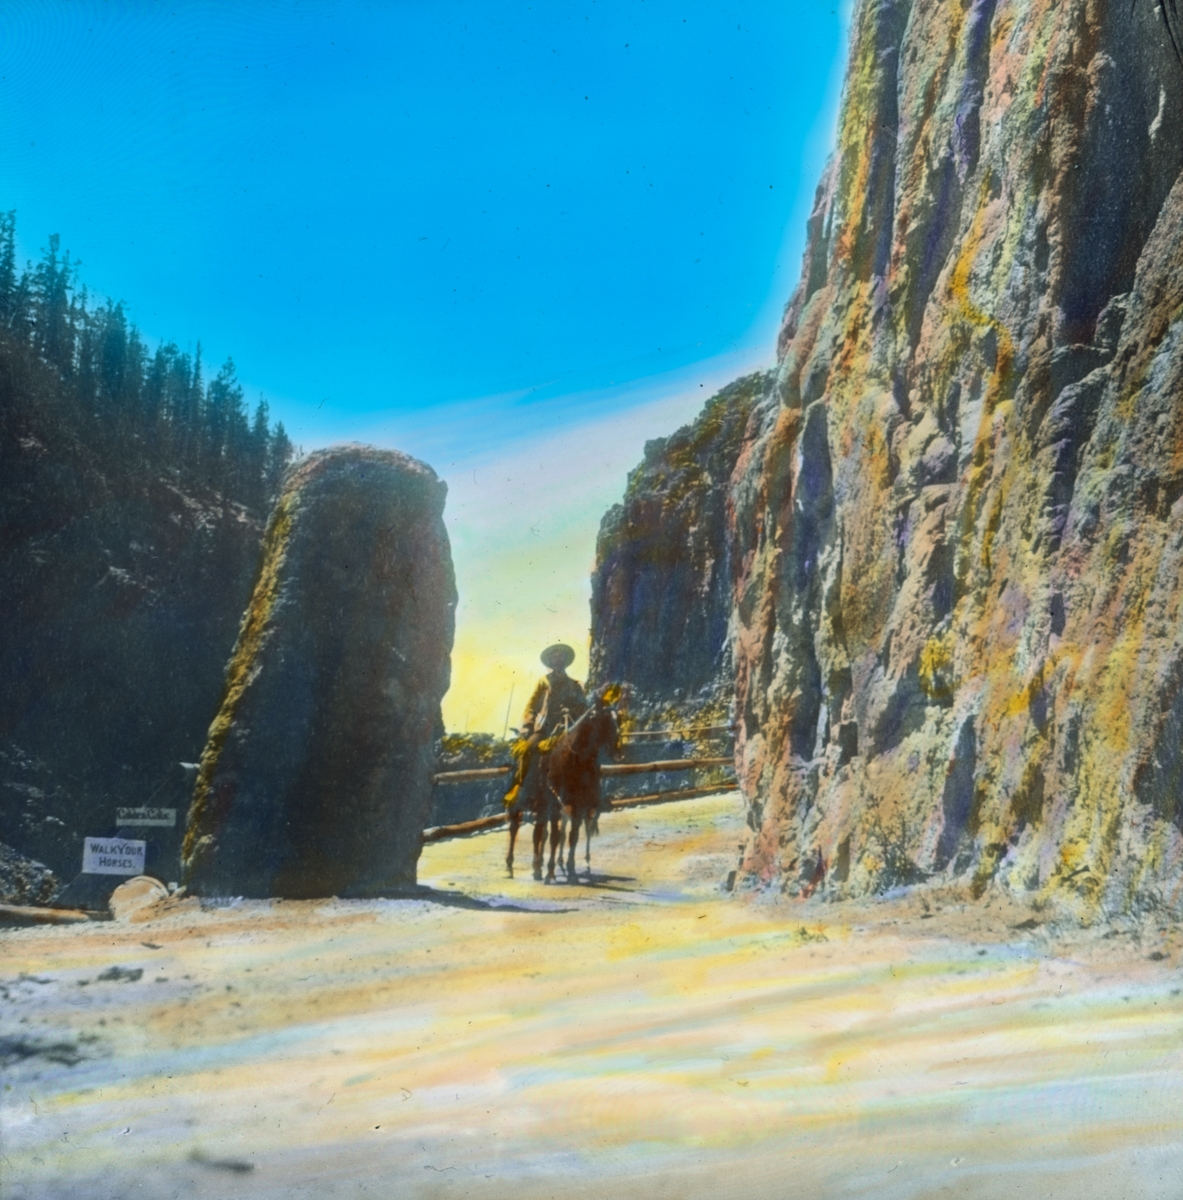 Håndkolorert dias. En mann sitter i sadlen på en hest, som står på en grusvei mellom en bratt fjellside og en høyreist stein i dalen Golden Gate, Yellowstone nasjonalpark. To skilt står ved steinen med påskriftene "Golden Gate" og "Walk your horses".  